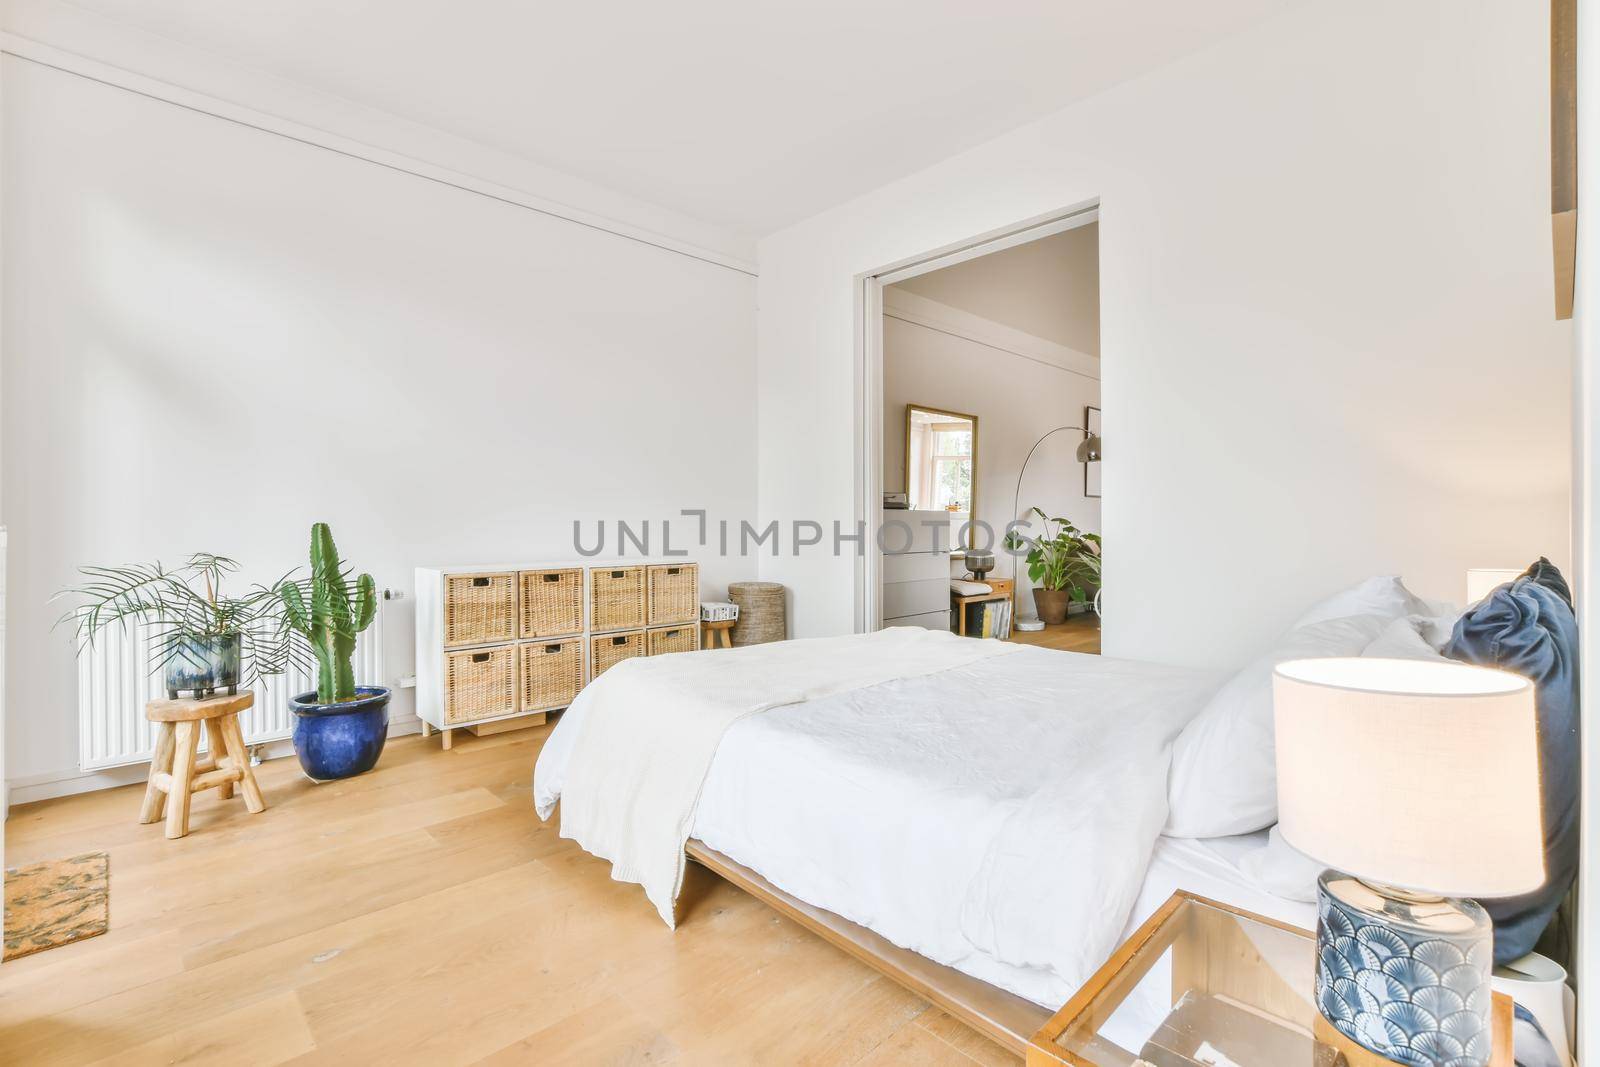 Elegant furnished bedroom by casamedia